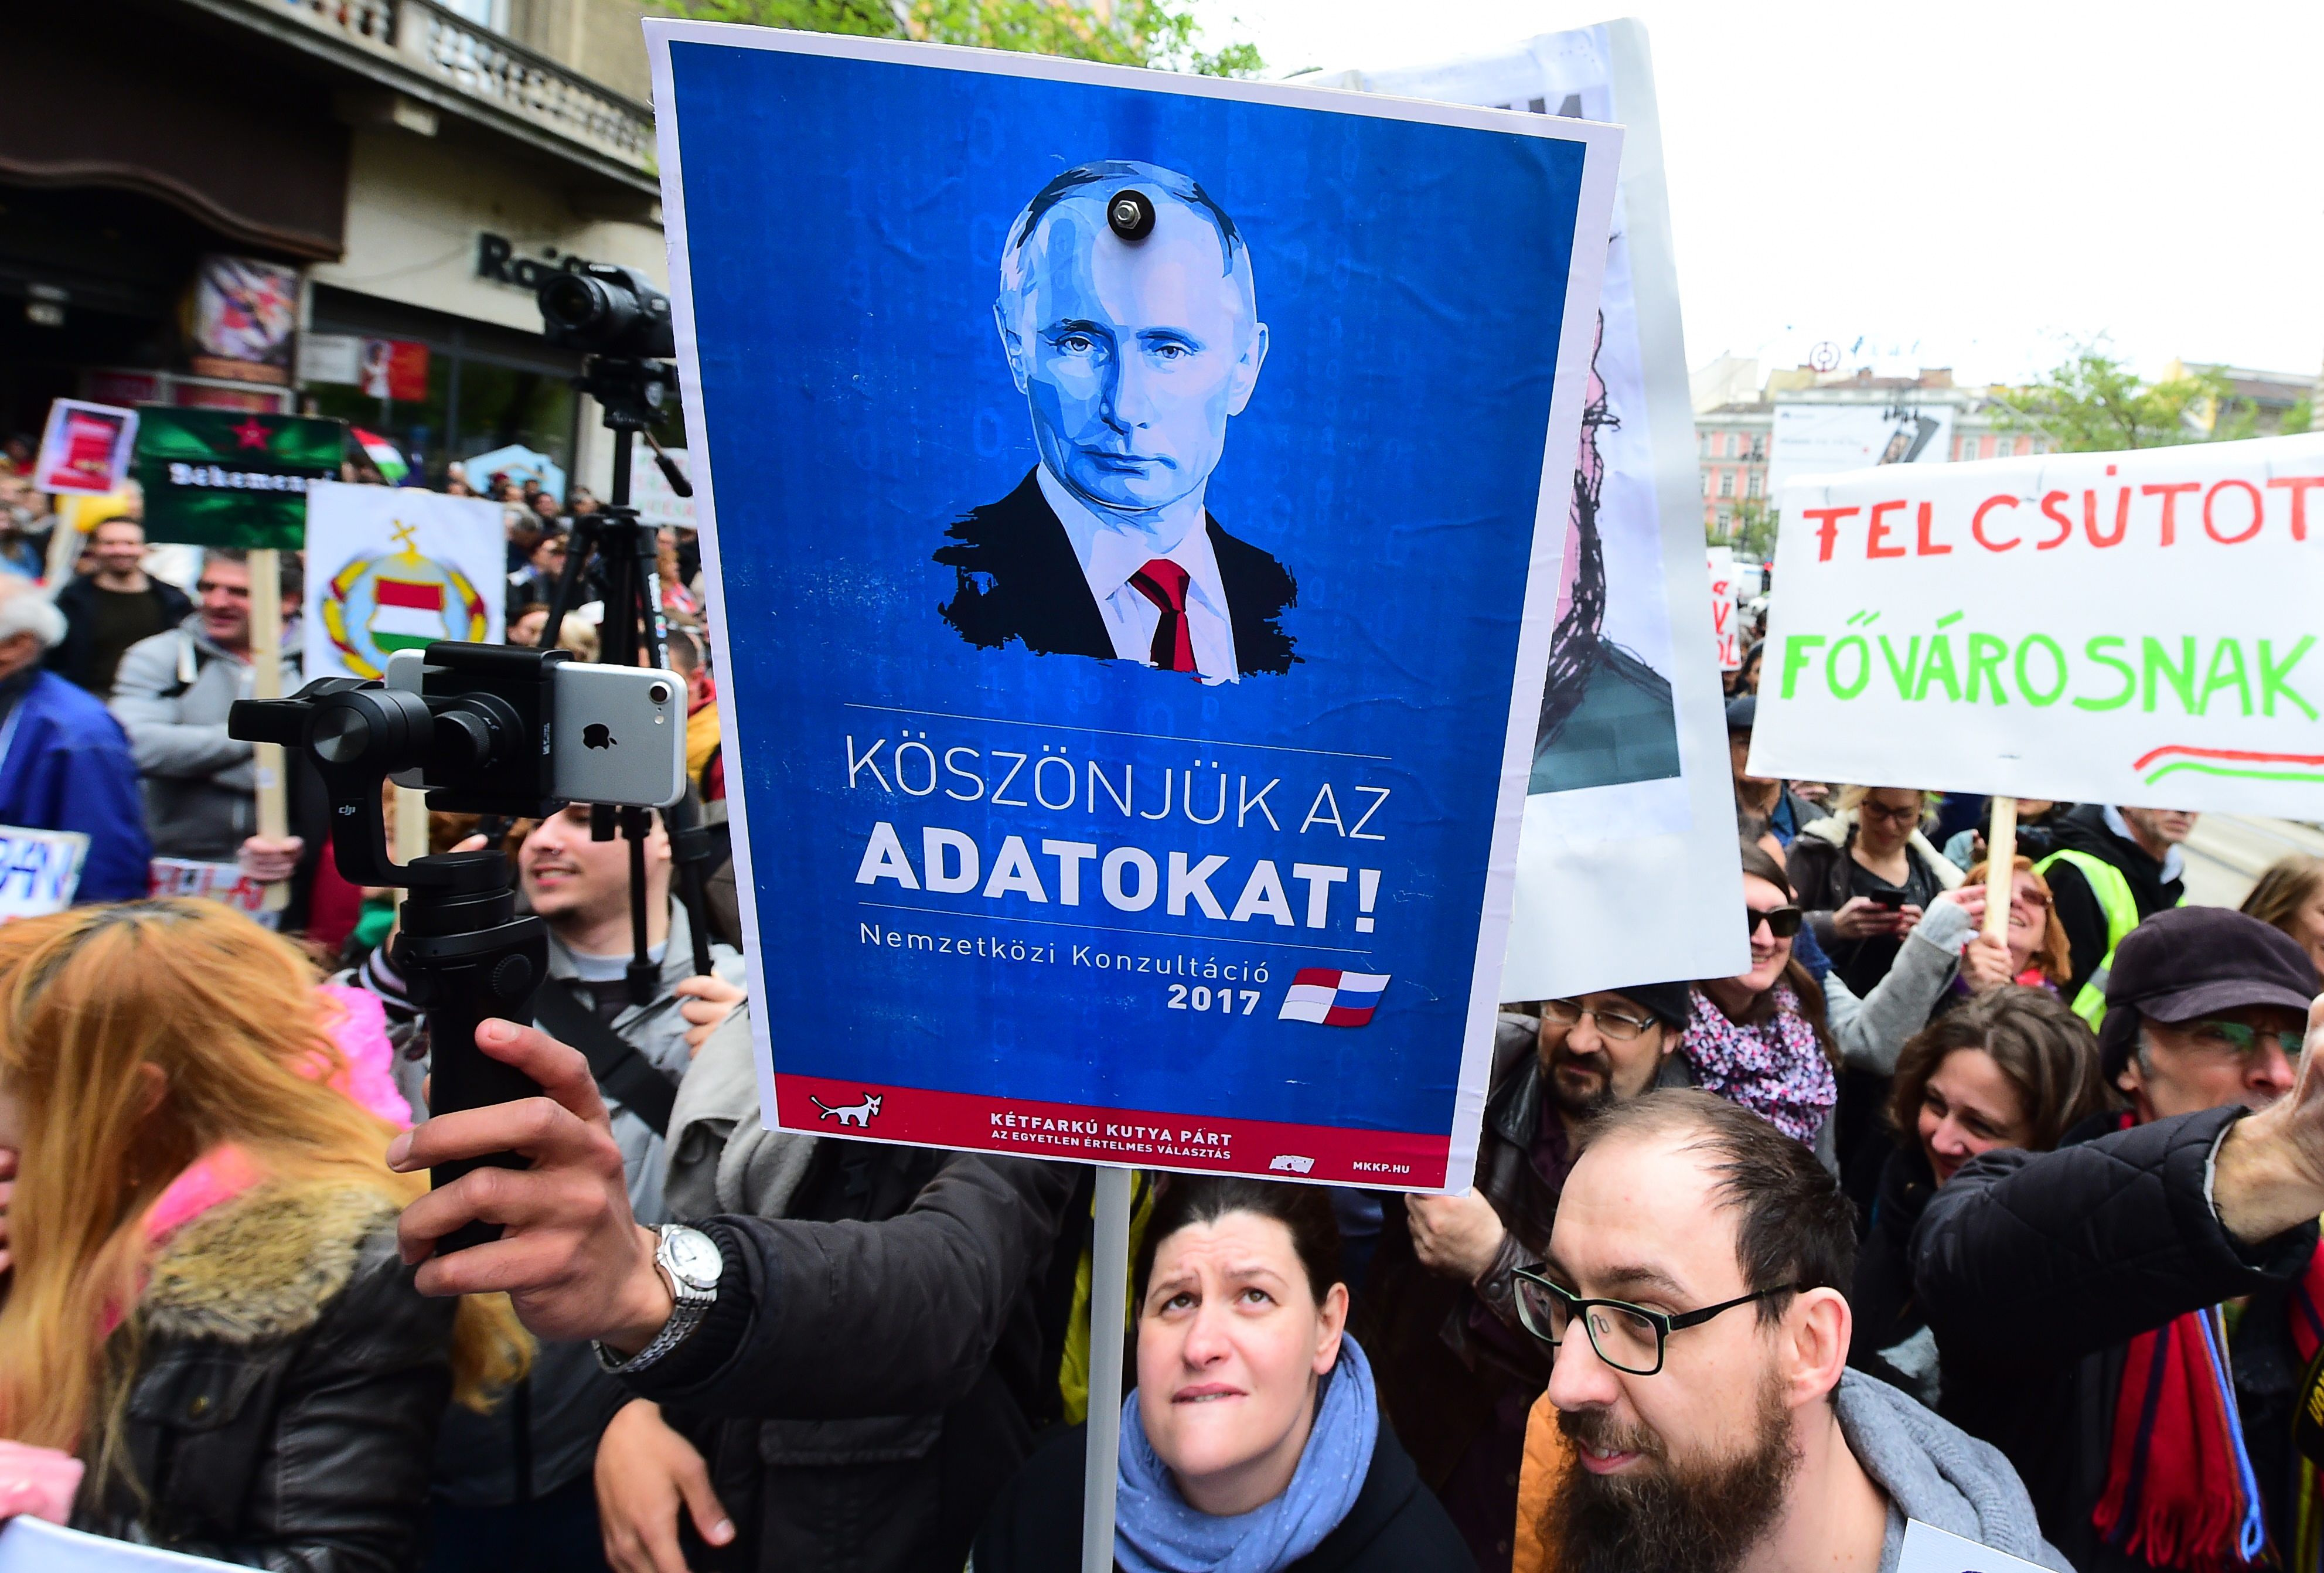 متظاهر يرفع صورة للرئيس الروسى